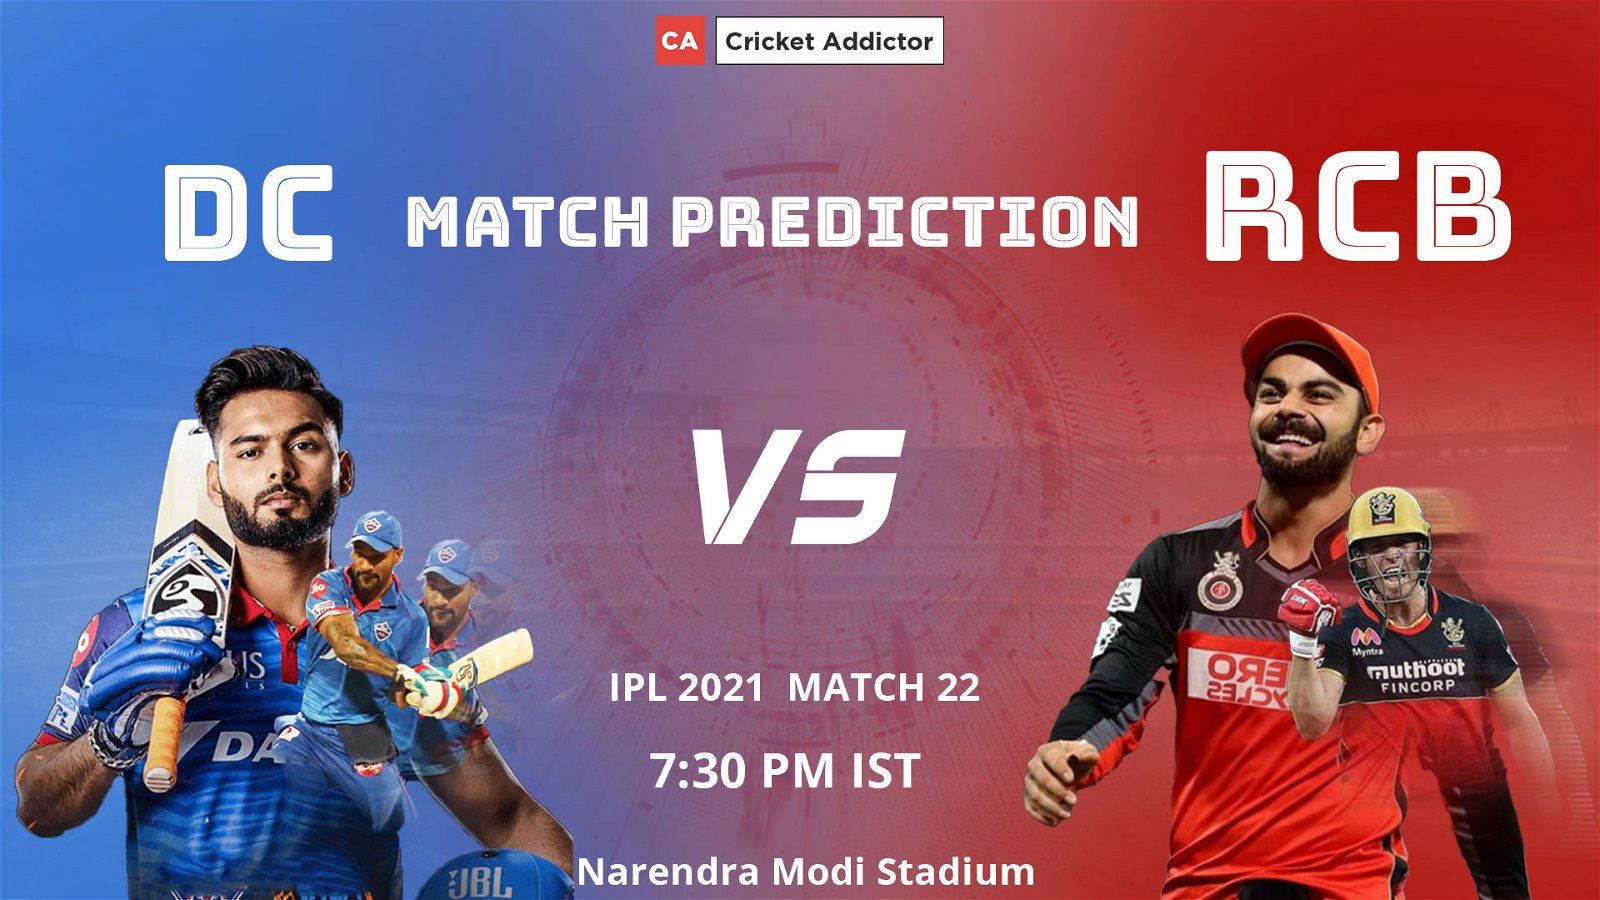 IPL 2021, Delhi Capitals, Royal Challengers Bangalore, Match Prediction, DC vs RCB